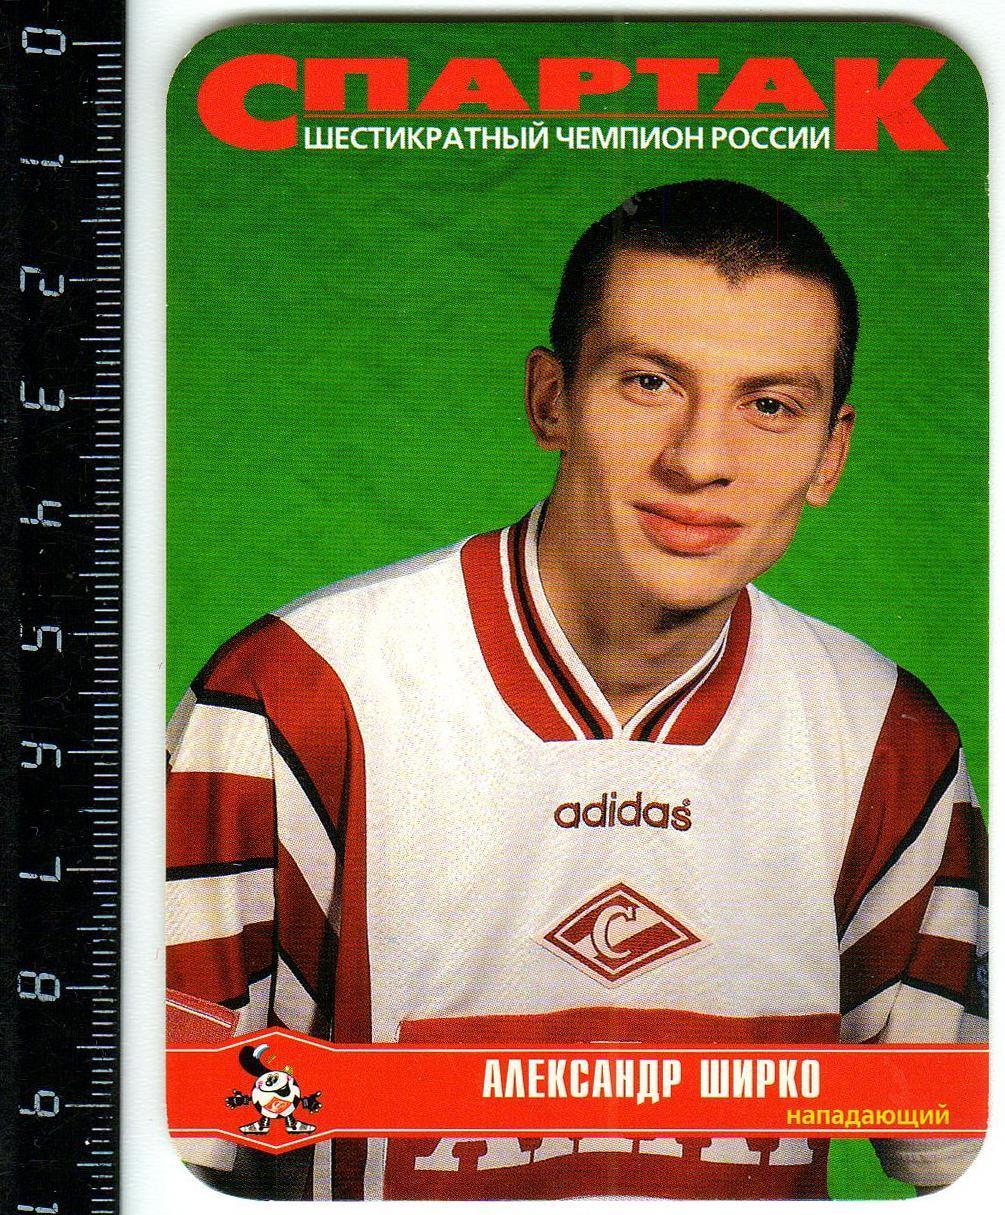 Календарик 1999 Александр Ширко Спартак Москва - шестикратный чемпион России